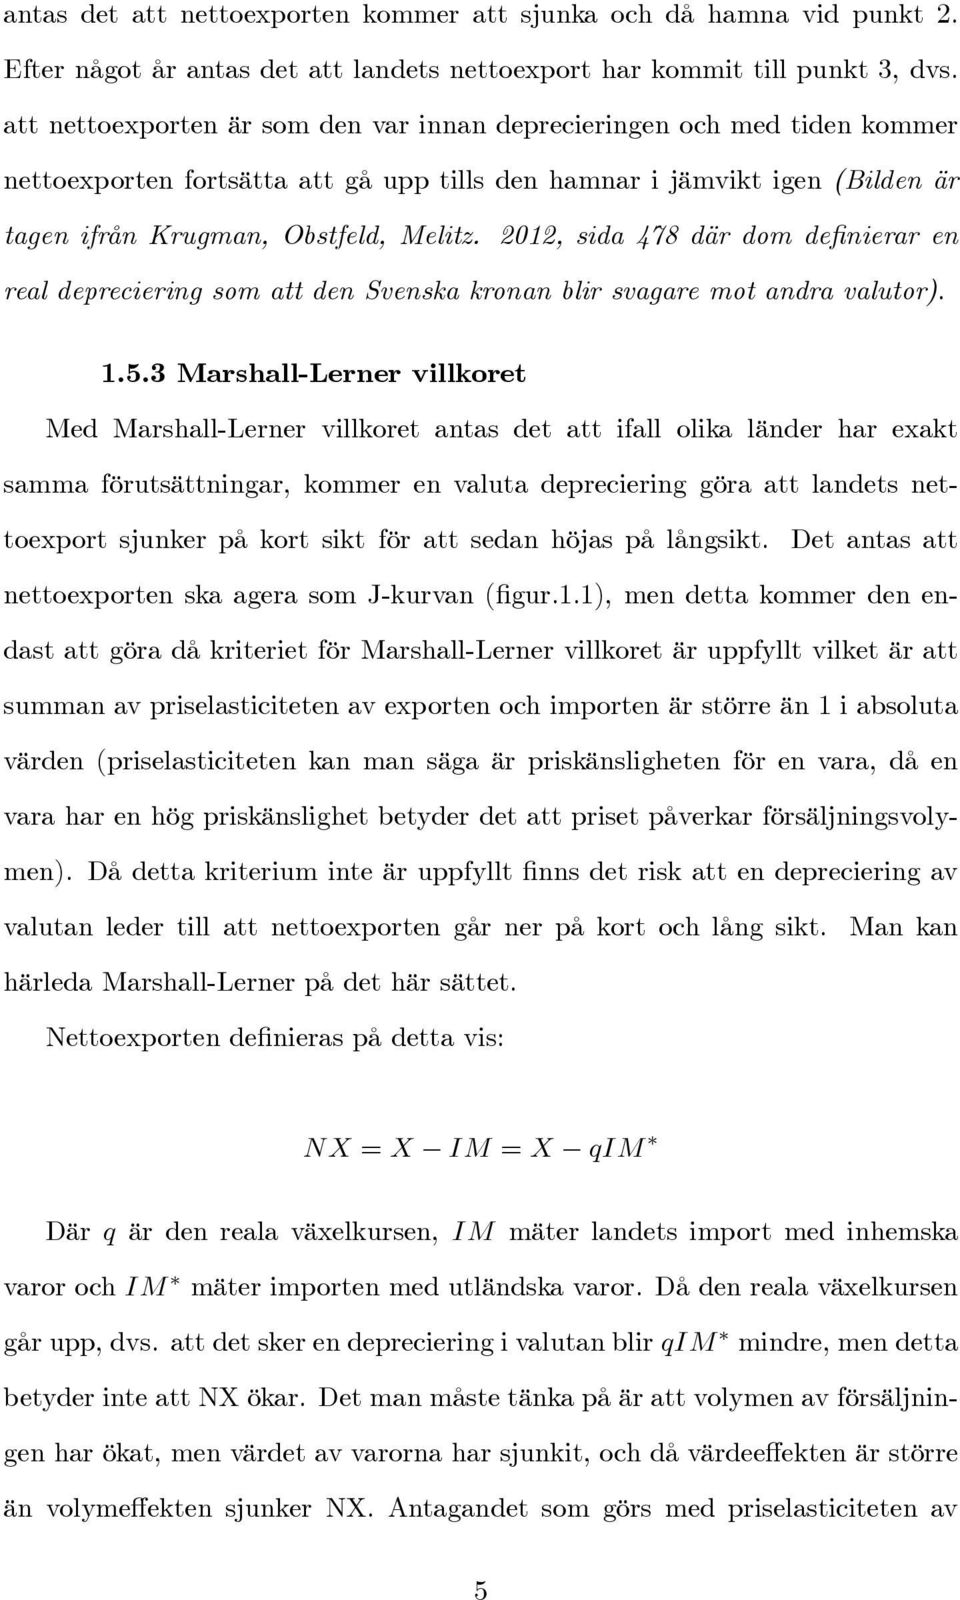 2012, sida 478 där dom de nierar en real depreciering som att den Svenska kronan blir svagare mot andra valutor). 1.5.